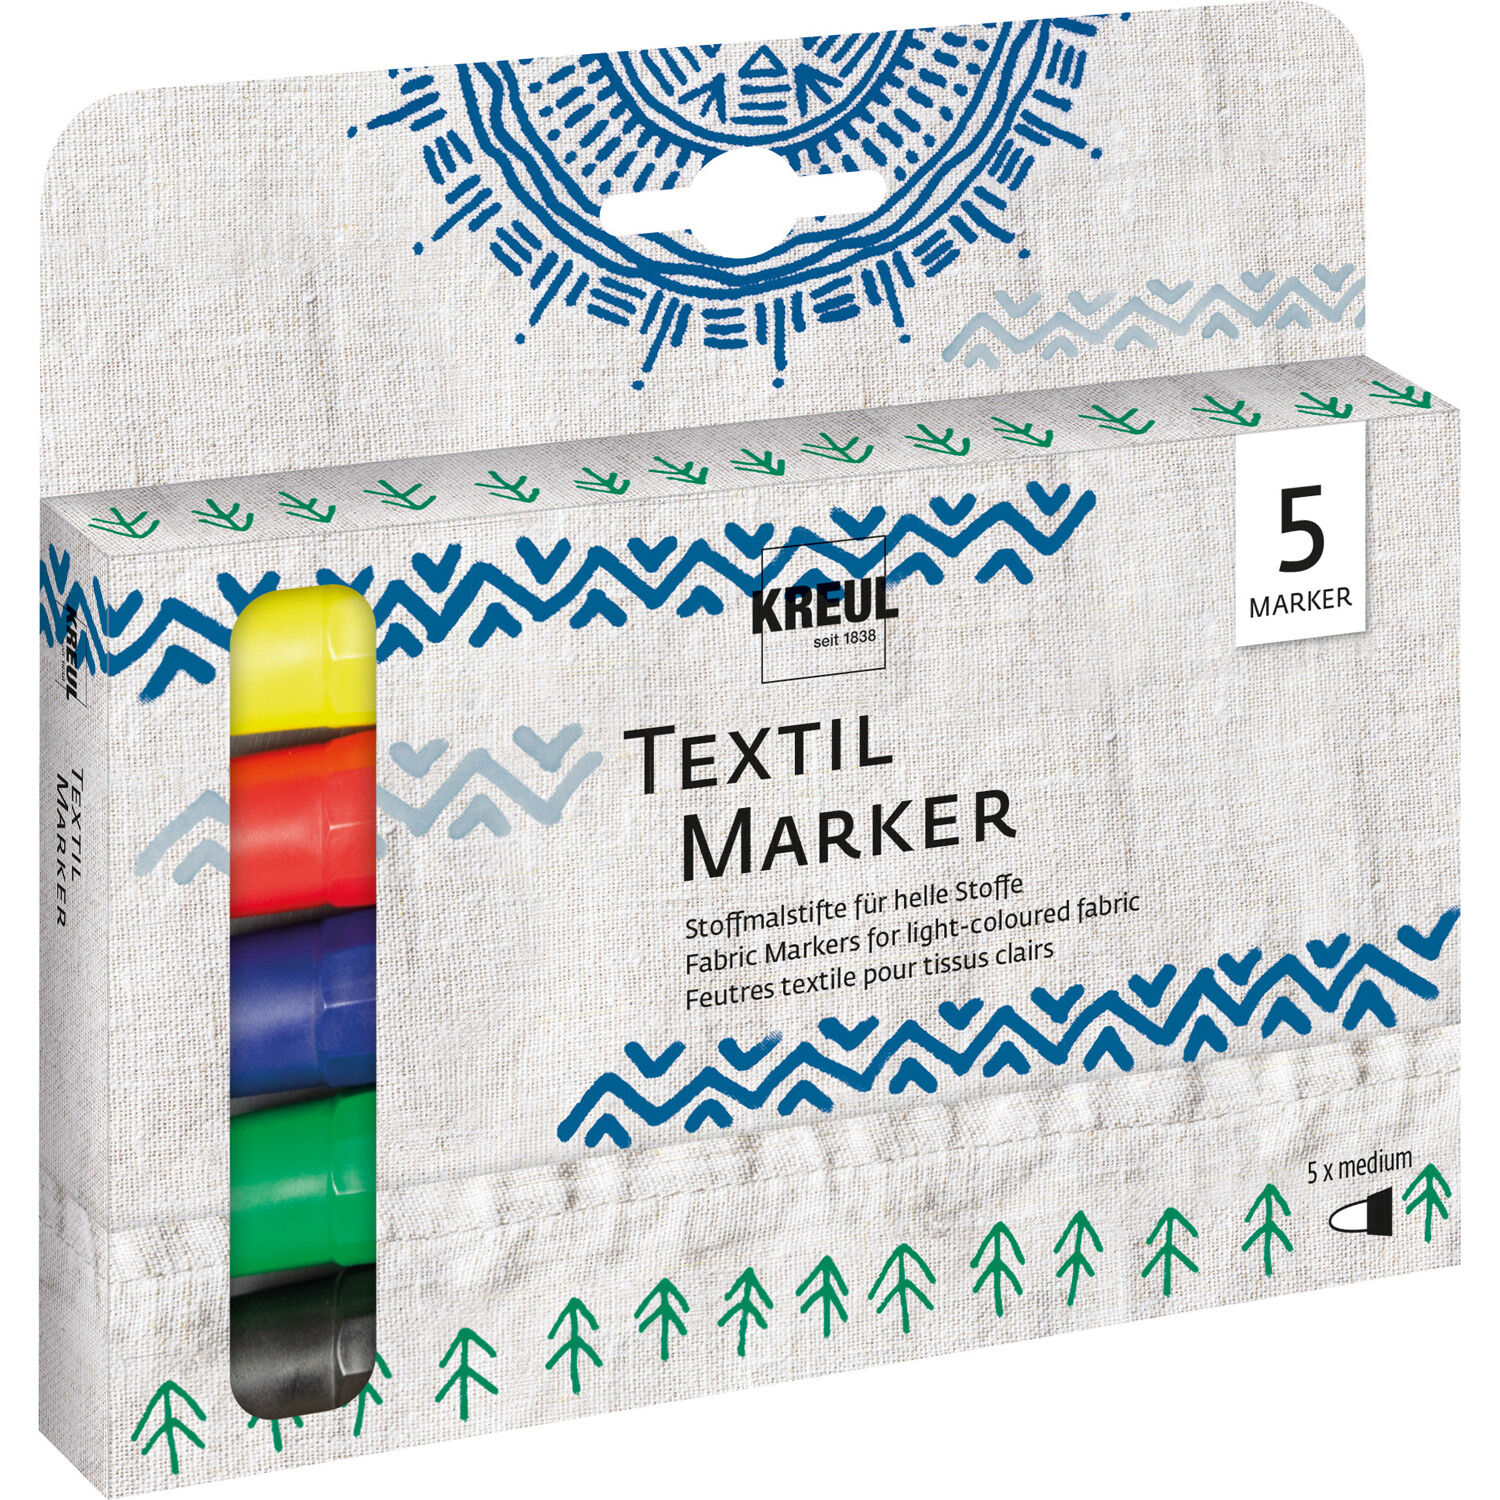 Kreul Textil Marker / Stoffmalstift, Medium, 2-4 mm, 5er-Set mit Gelb, Rot, Blau, Grün, Schwarz